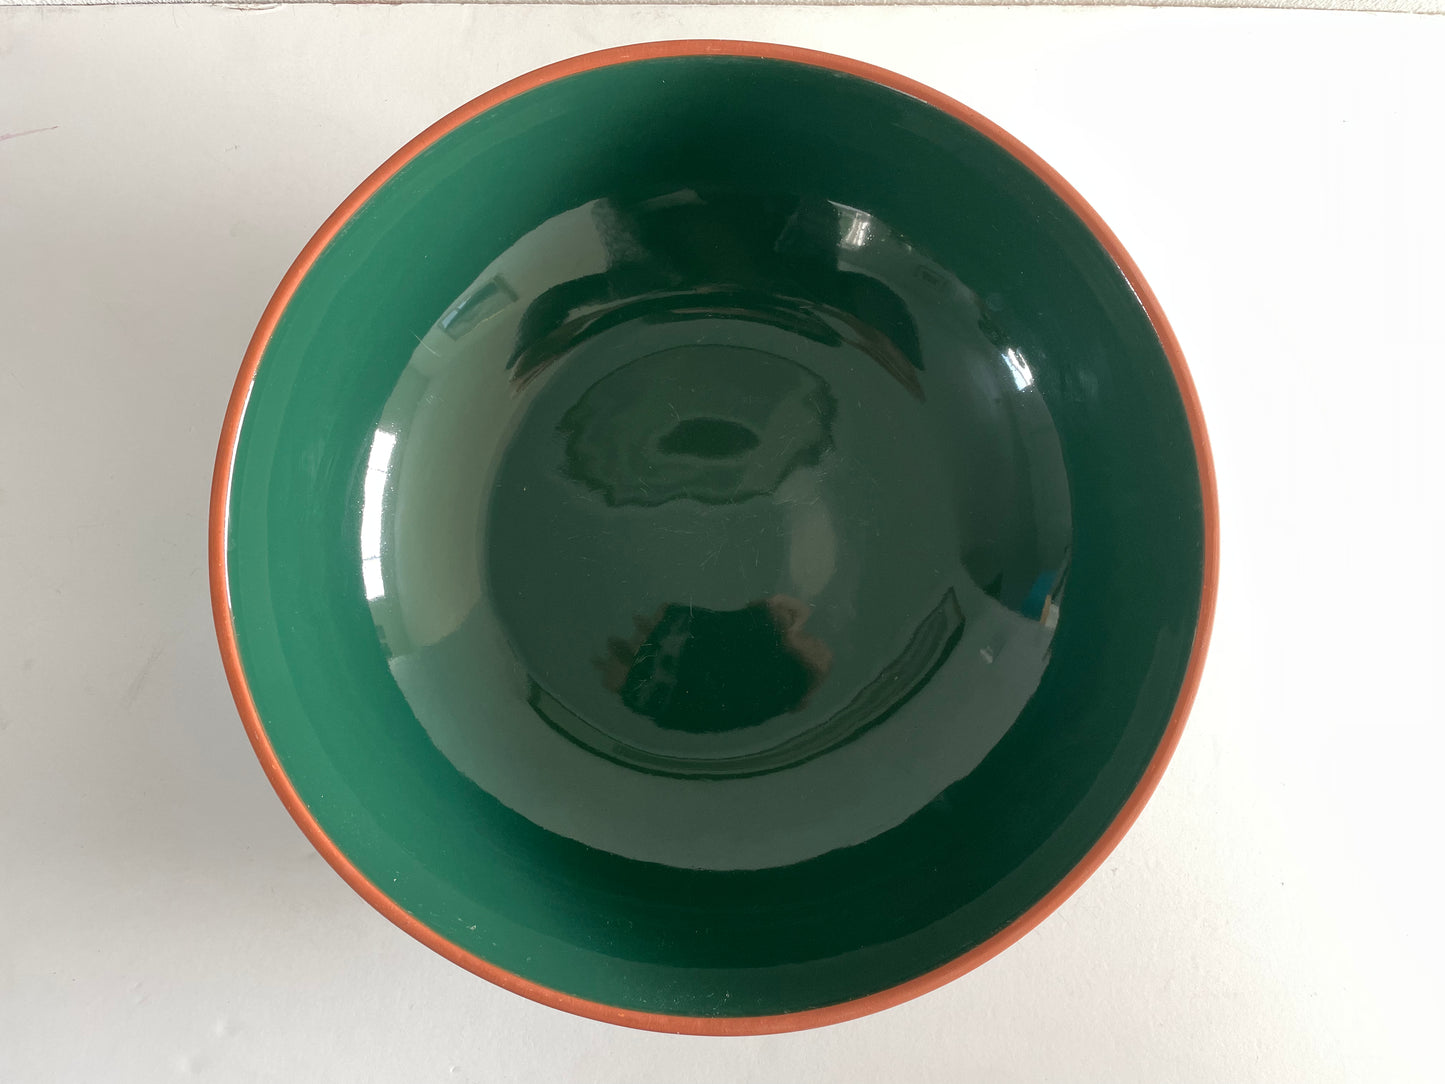 Vintage 1990s Dansk Deep Green Large Serving Pasta Bowl Ceramic Platter